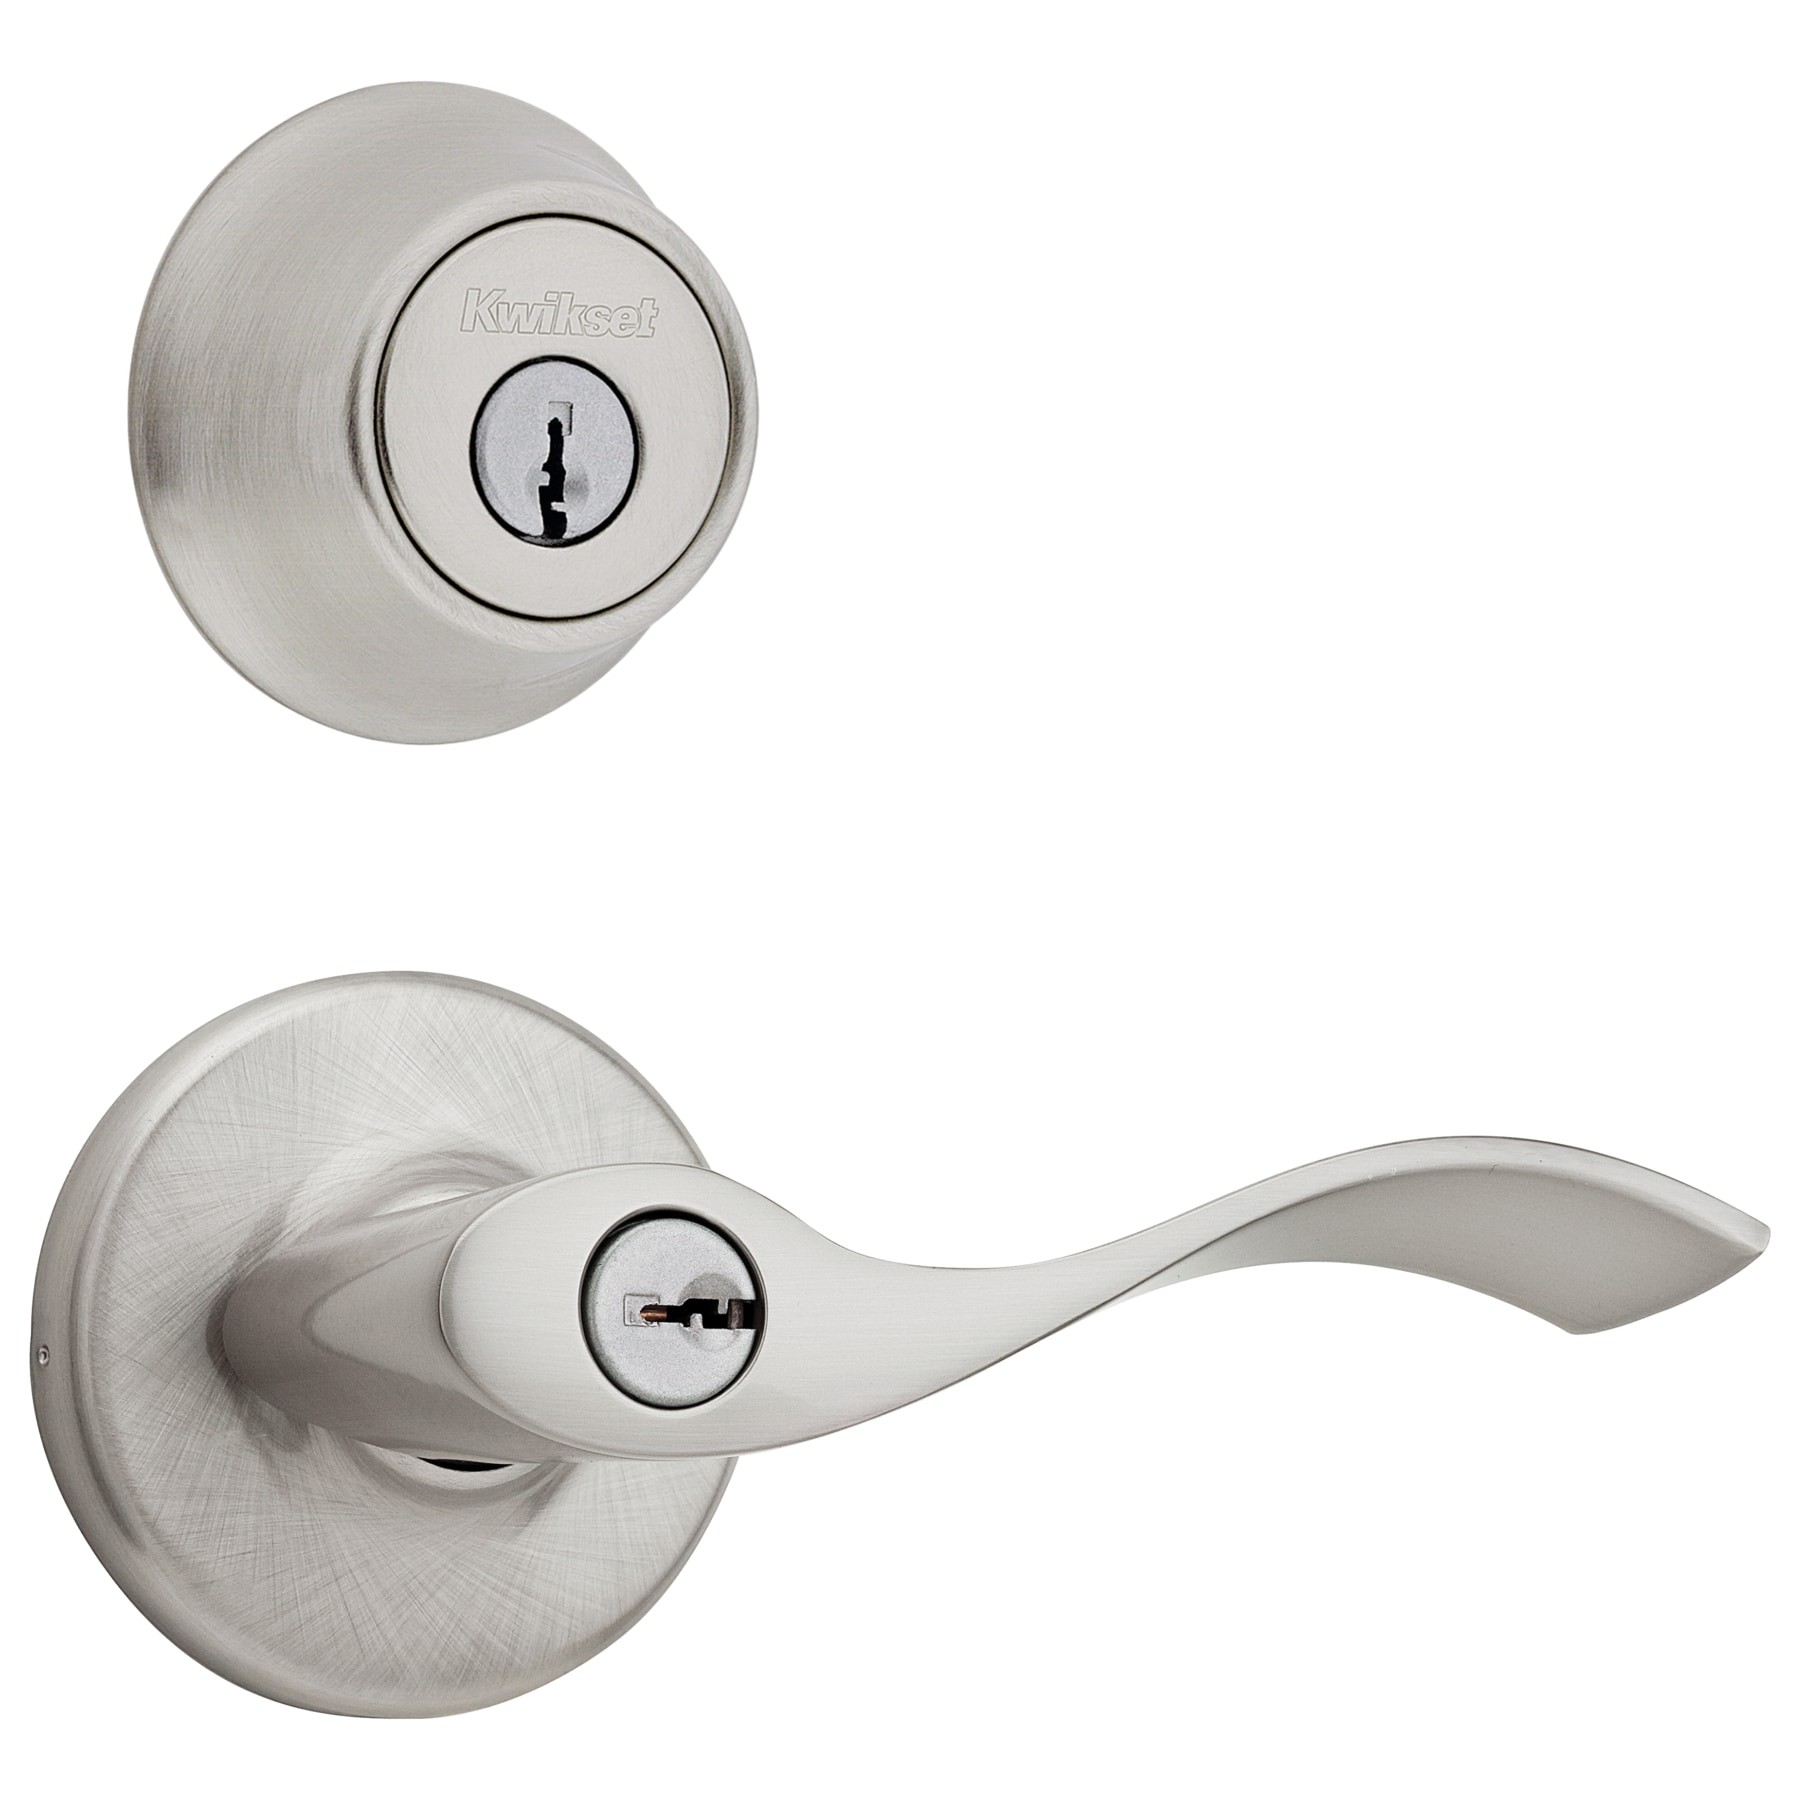 Details about   Kwikset model 23067-001 privacy door lever 